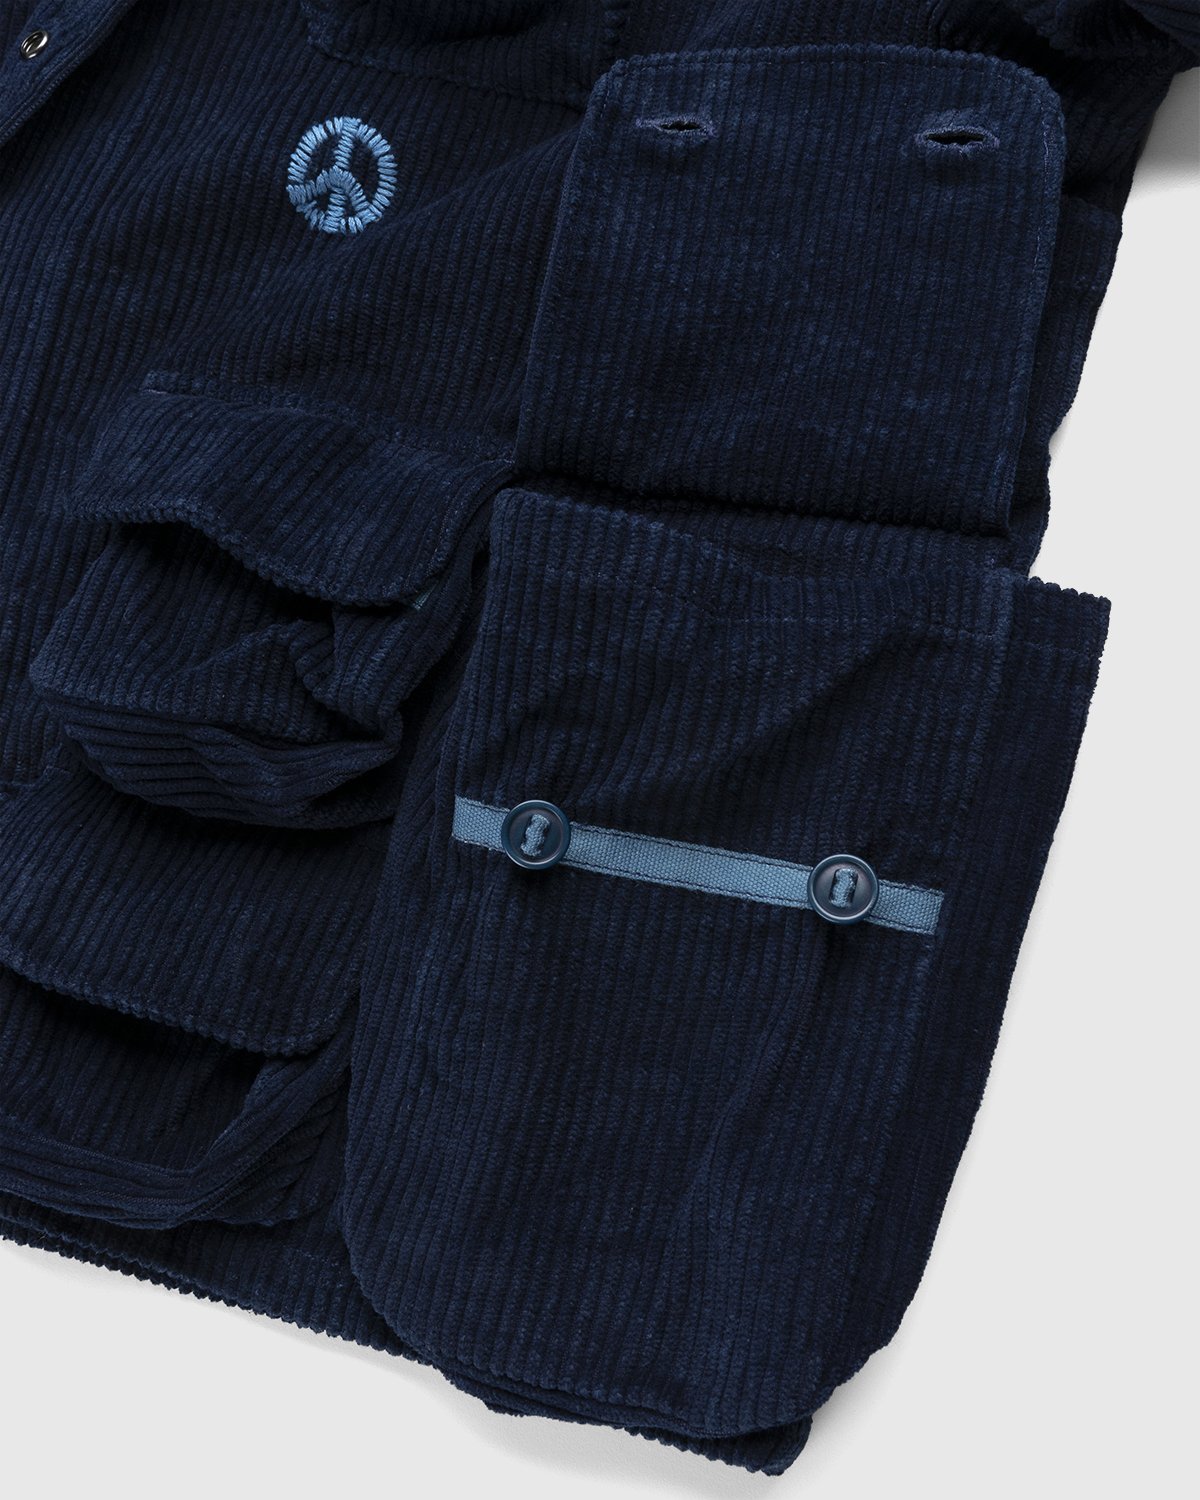 Story mfg. - Rambler Jacket Deep Indigo Corduroy - Clothing - Blue - Image 5